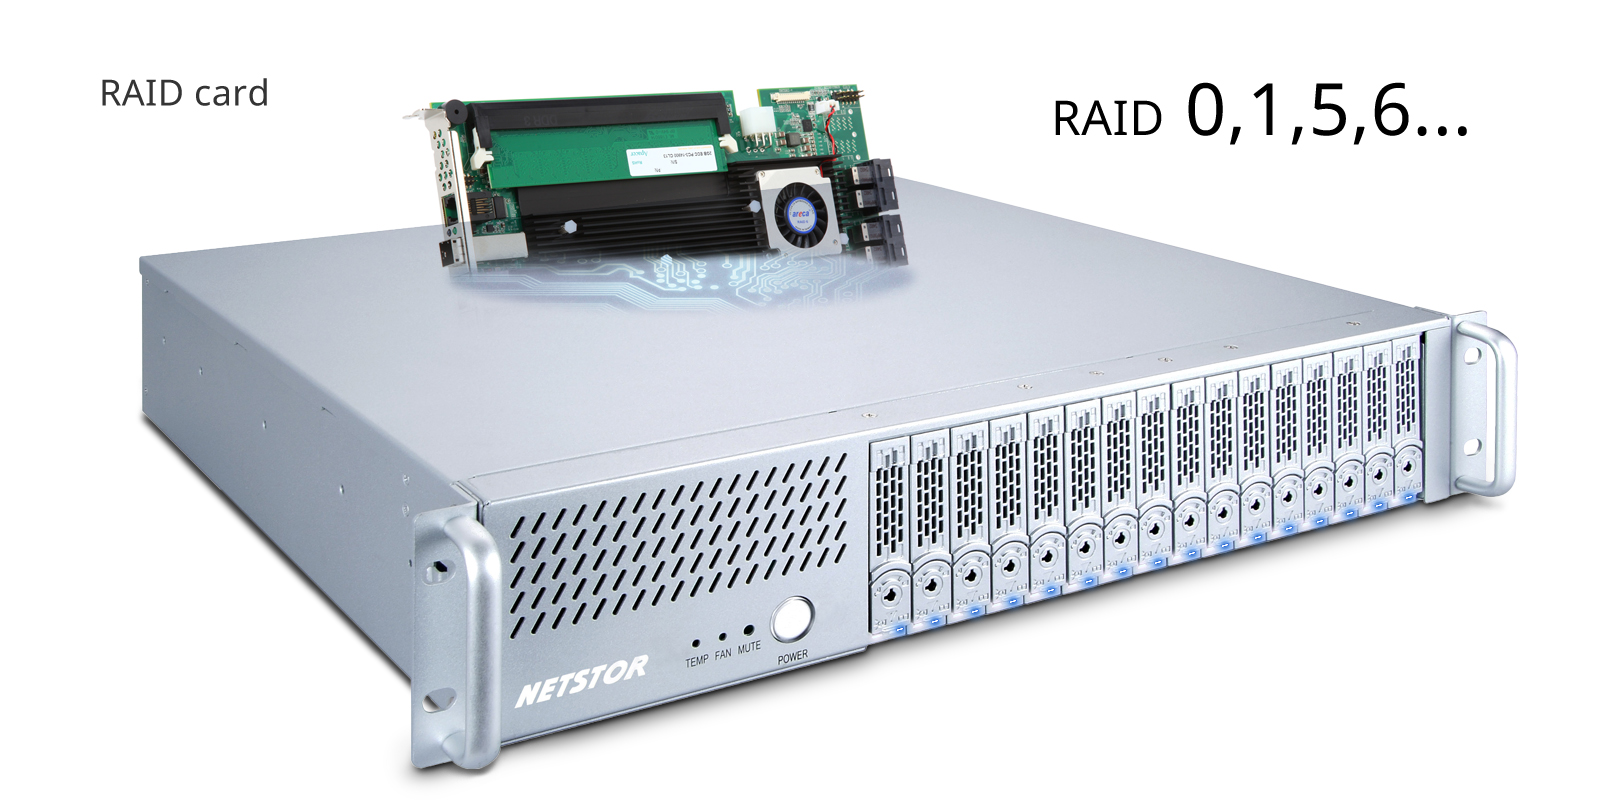 Netstor NA338TB3 support wide range RAID card.